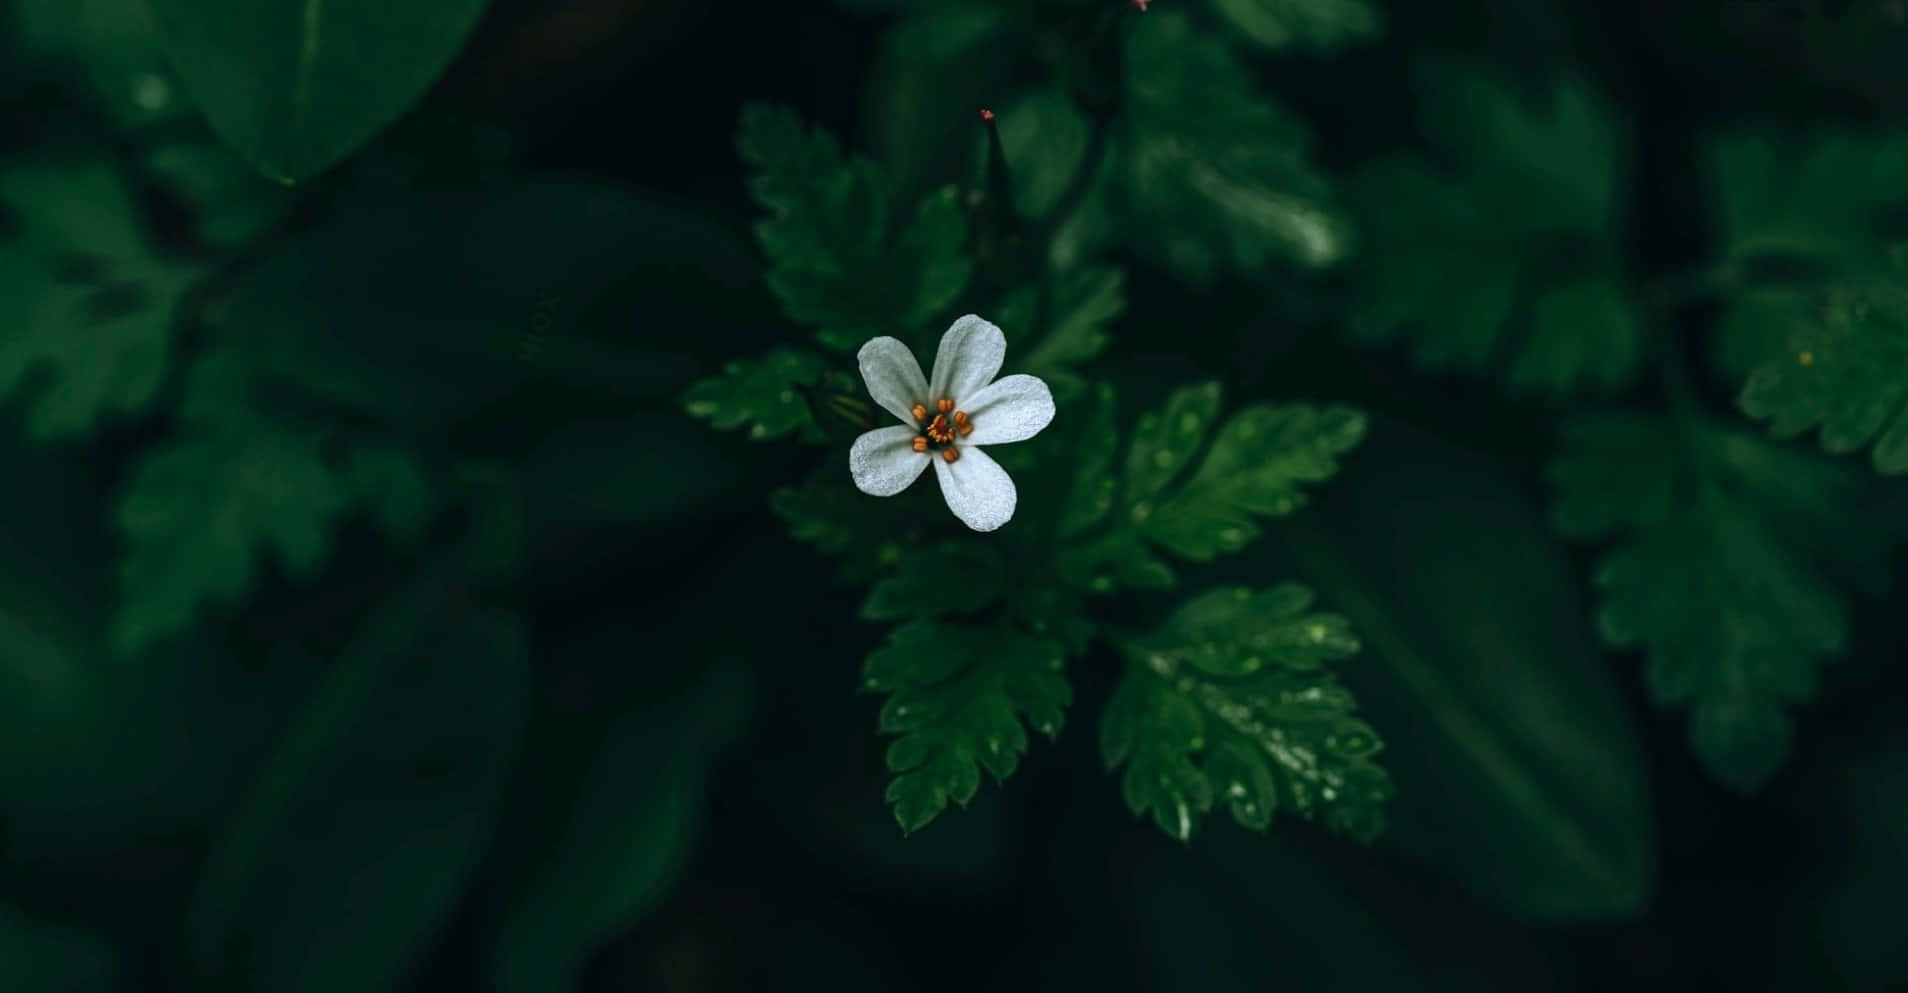 Un'immagineun Fiore Bianco Immacolato Posato Su Un Vivace Stelo Verde.